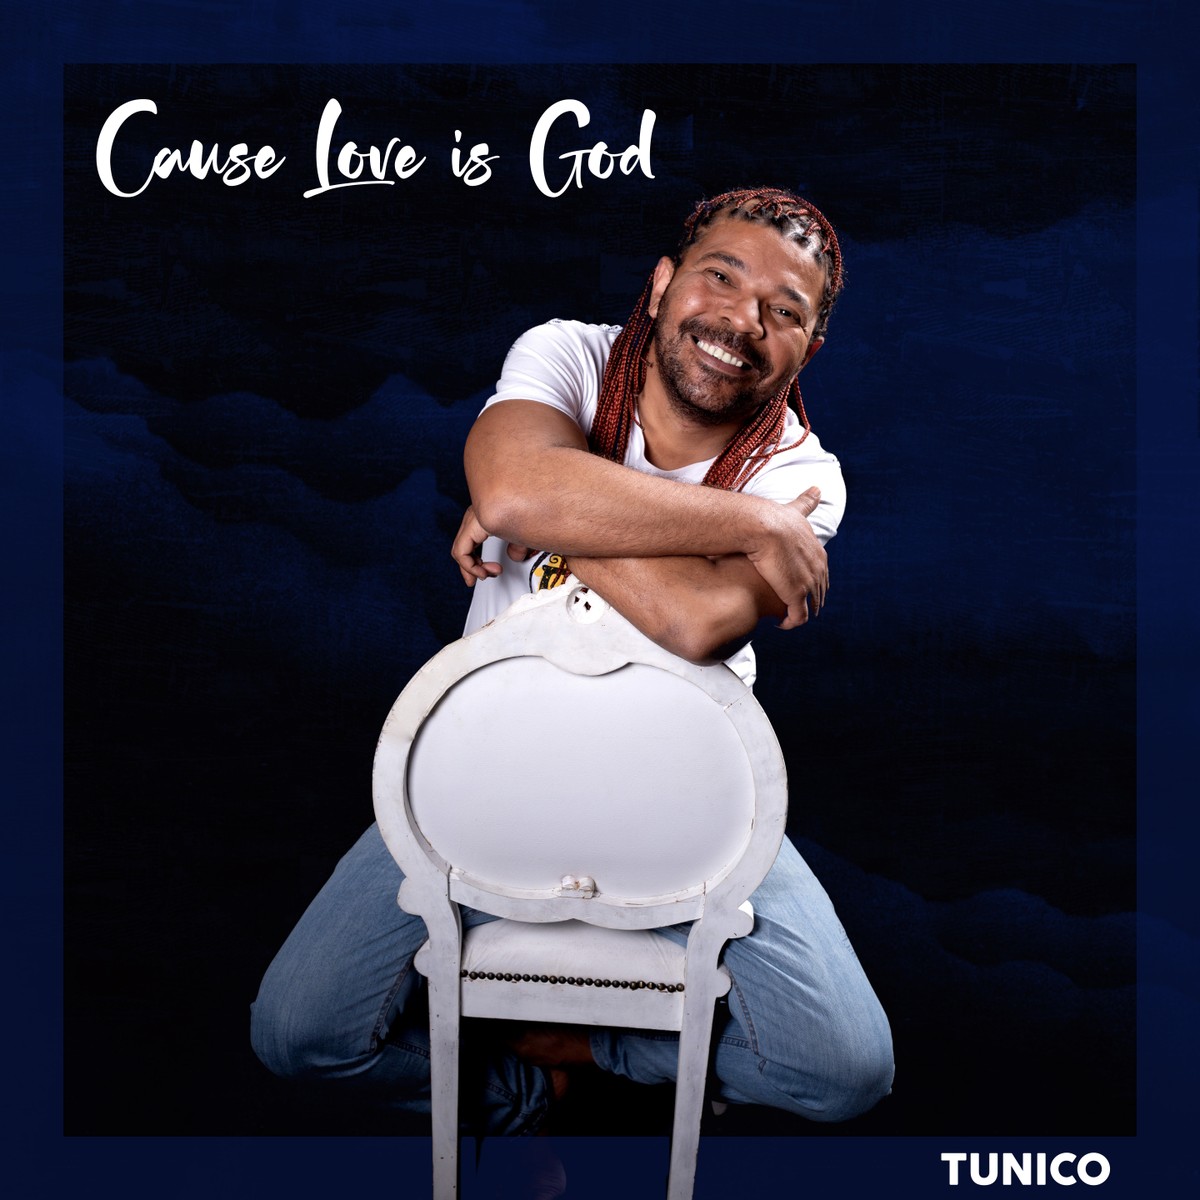 Tunico da Vila mistura samba e gospel no unmarried ‘Porque o amor é Deus’ |  Weblog do Mauro Ferreira